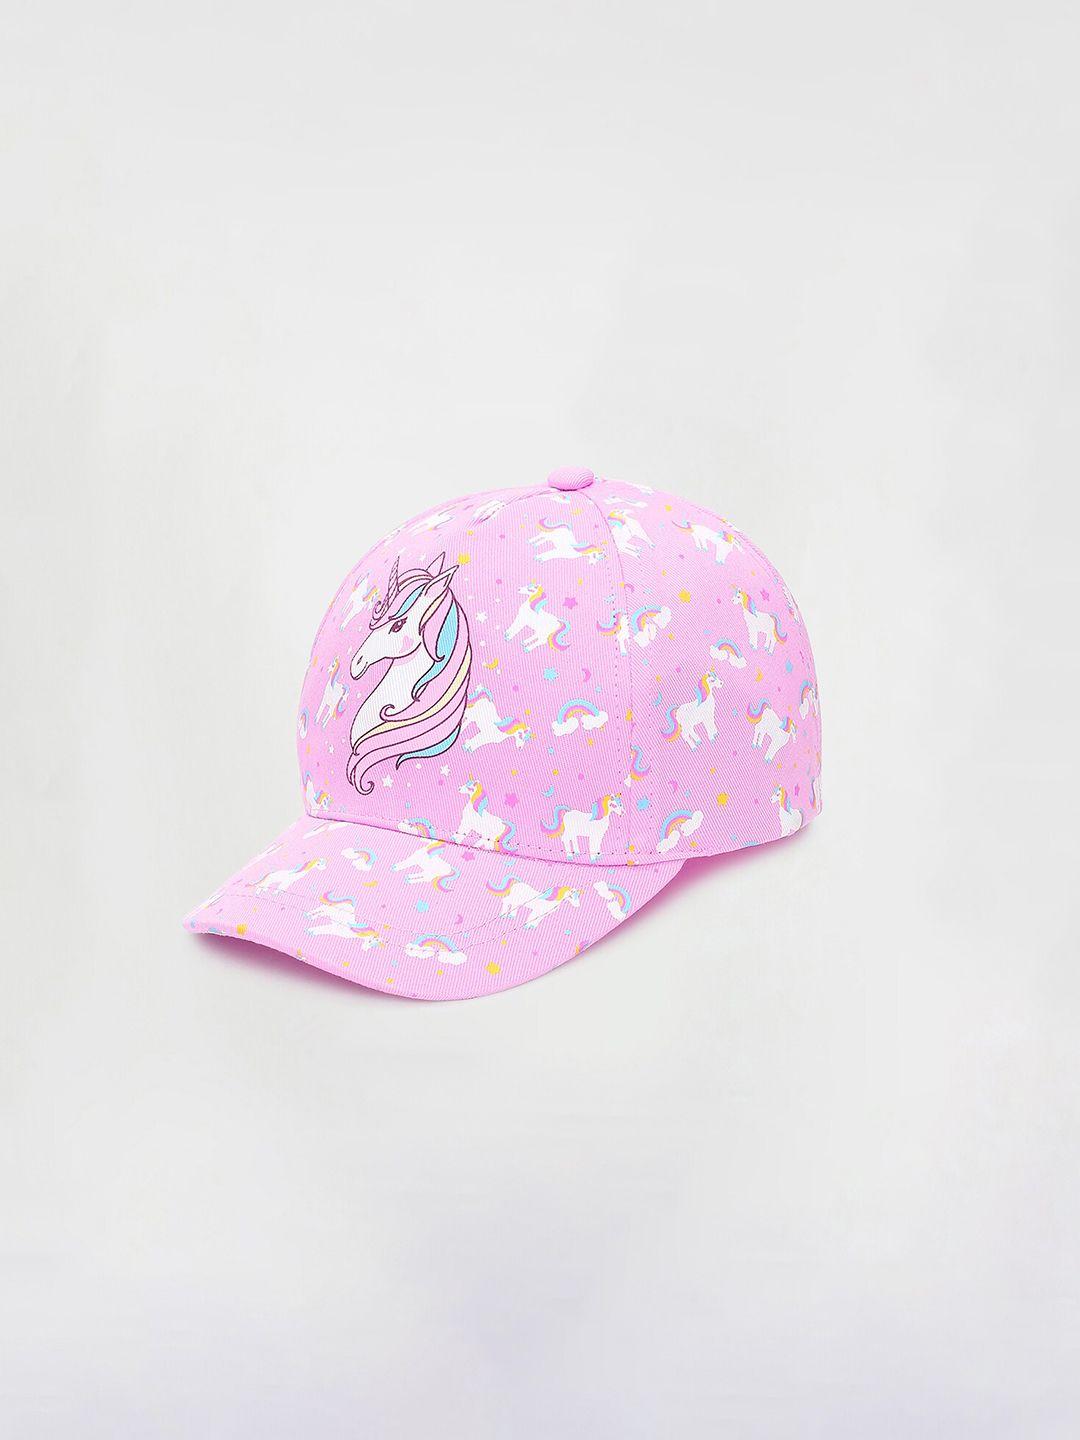 max Girls Pink & White Printed Baseball Cap